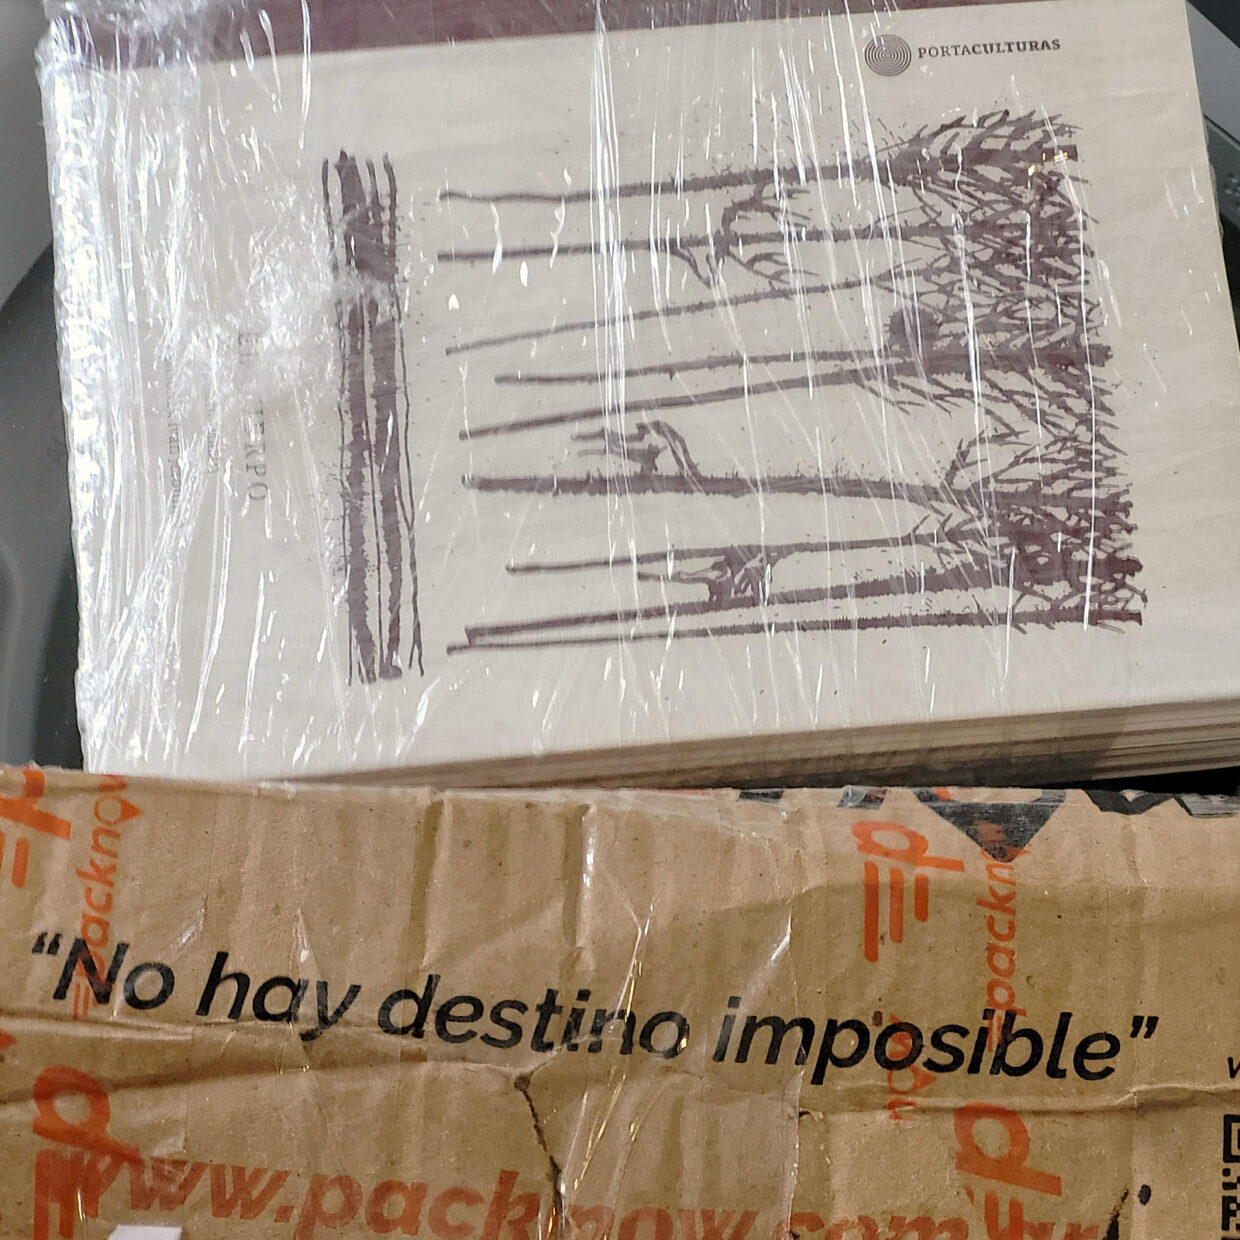 pacote aberto onde se lê "No hay destino imposible”